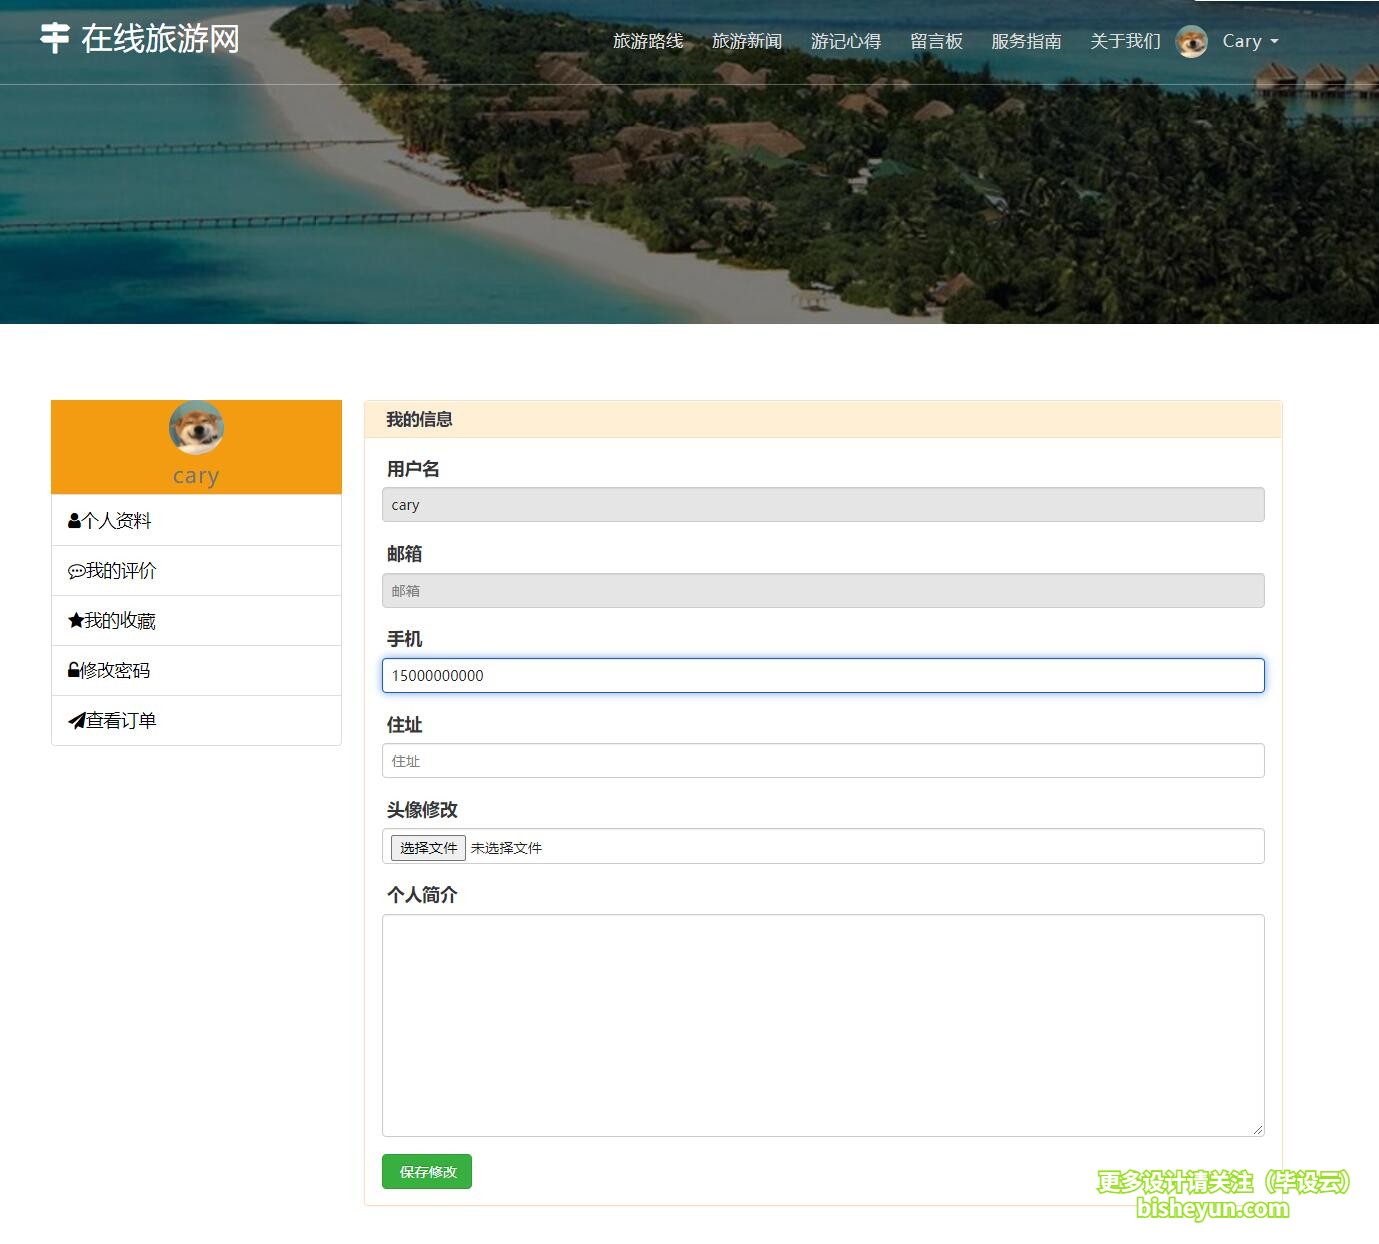 基于php在线旅游网站管理系统-用户个人中心